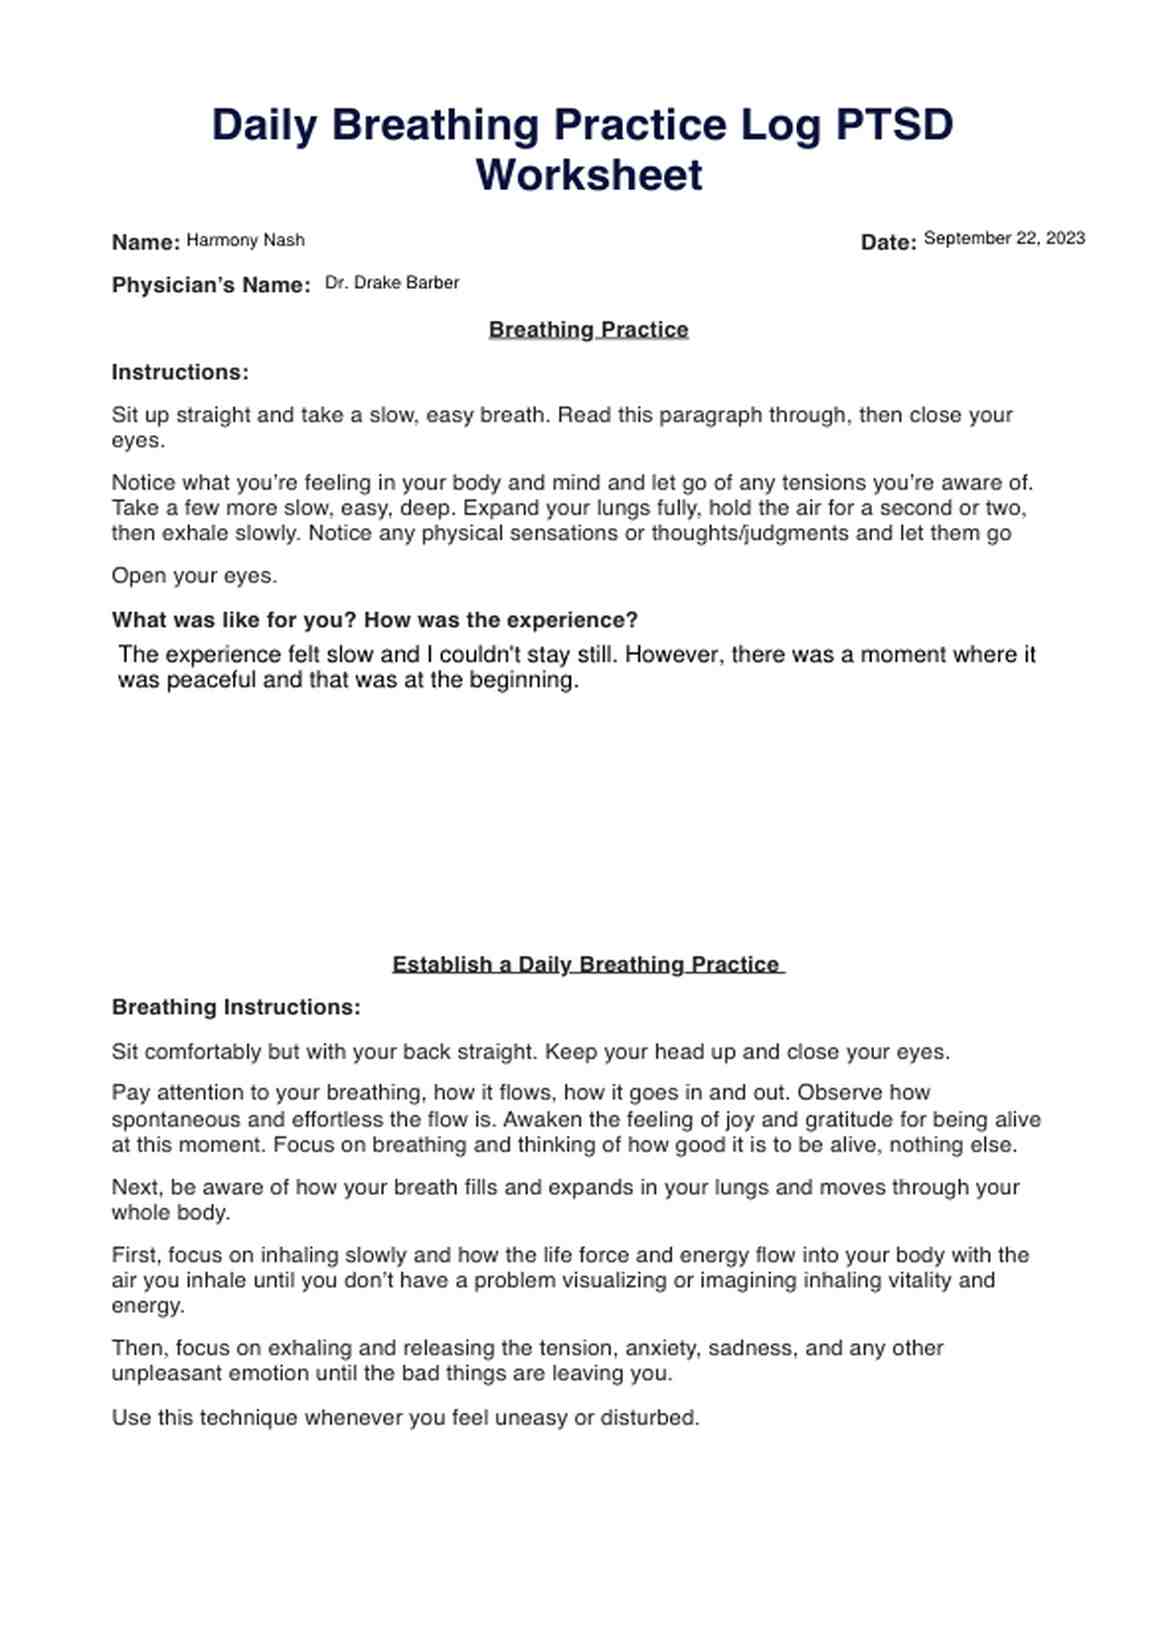 Daily Breathing Practice Log PTSD Worksheet PDF Example